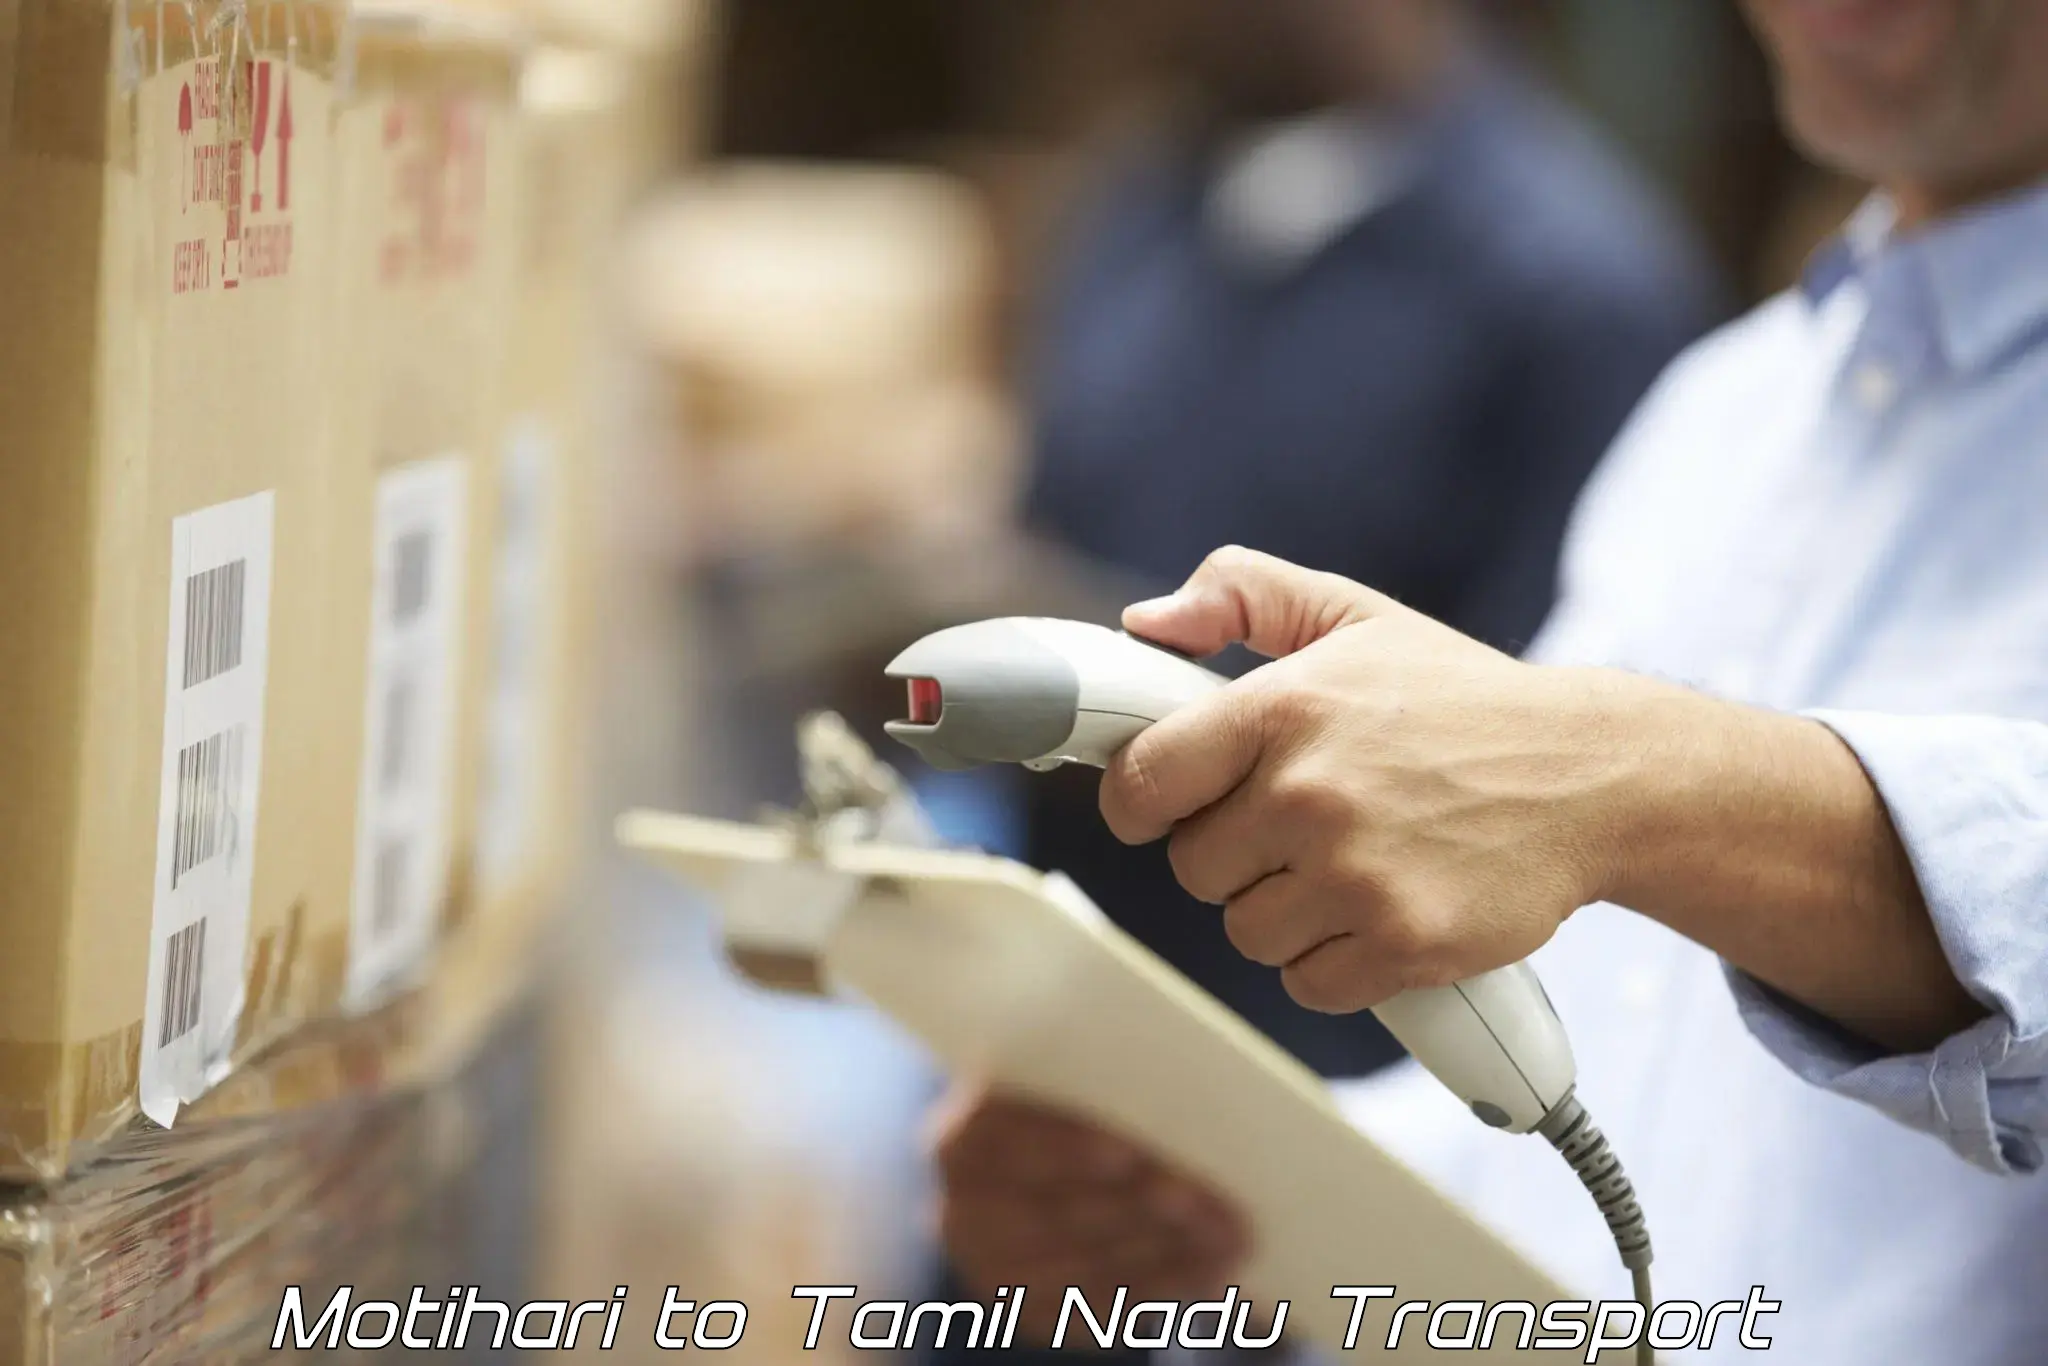 Shipping partner Motihari to Tamil Nadu